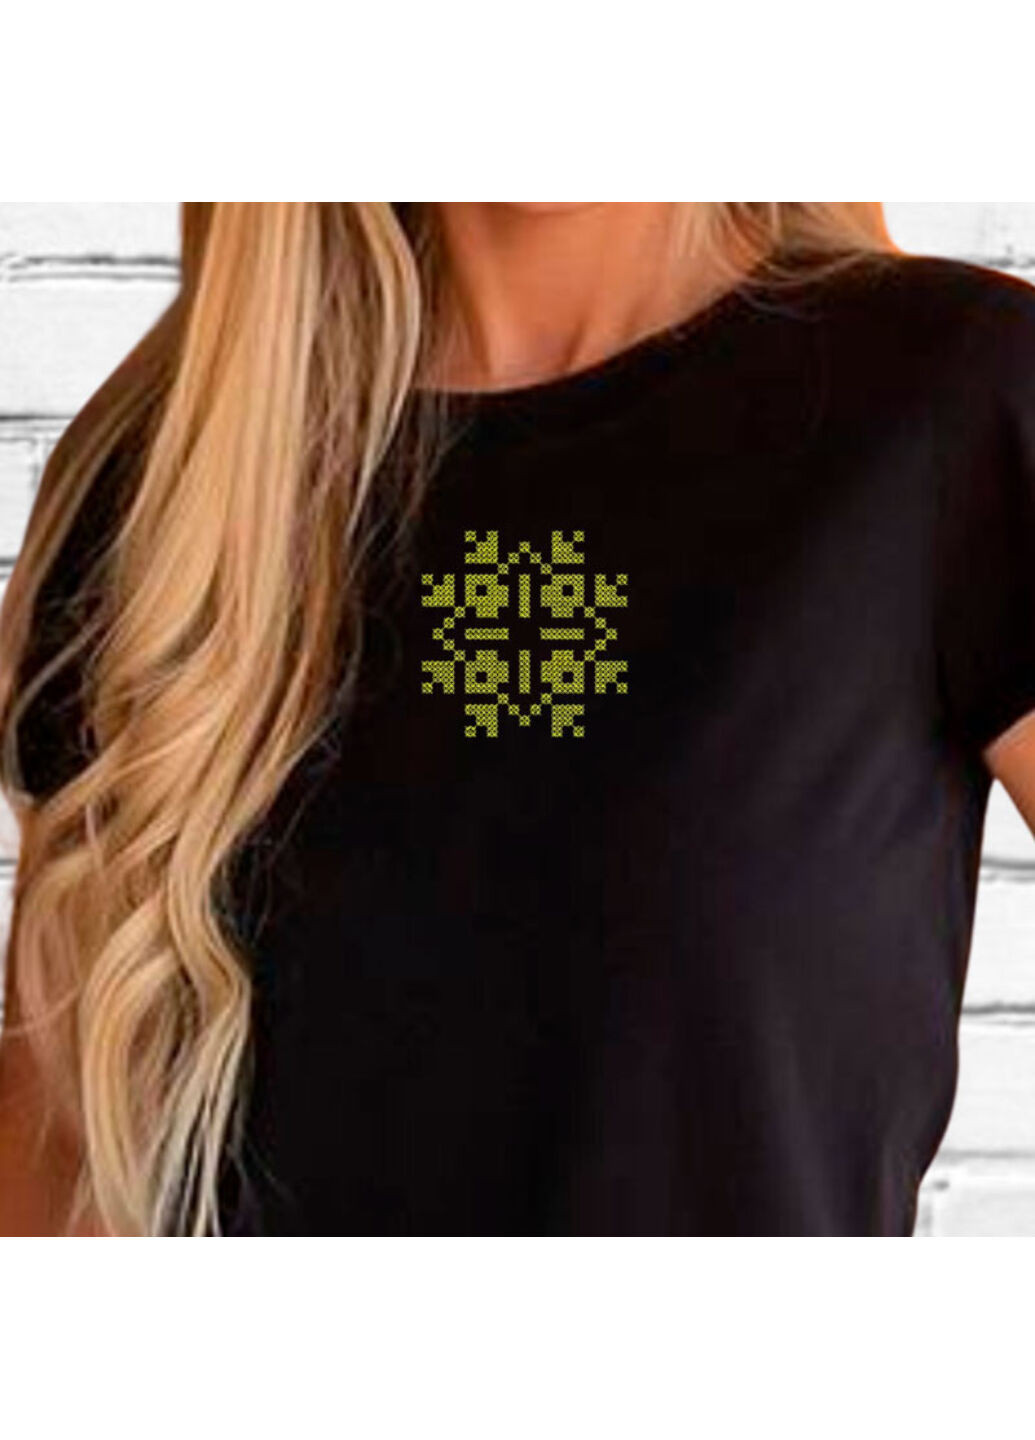 Черная футболка етно з вишивкою 02-2 женская черный m No Brand